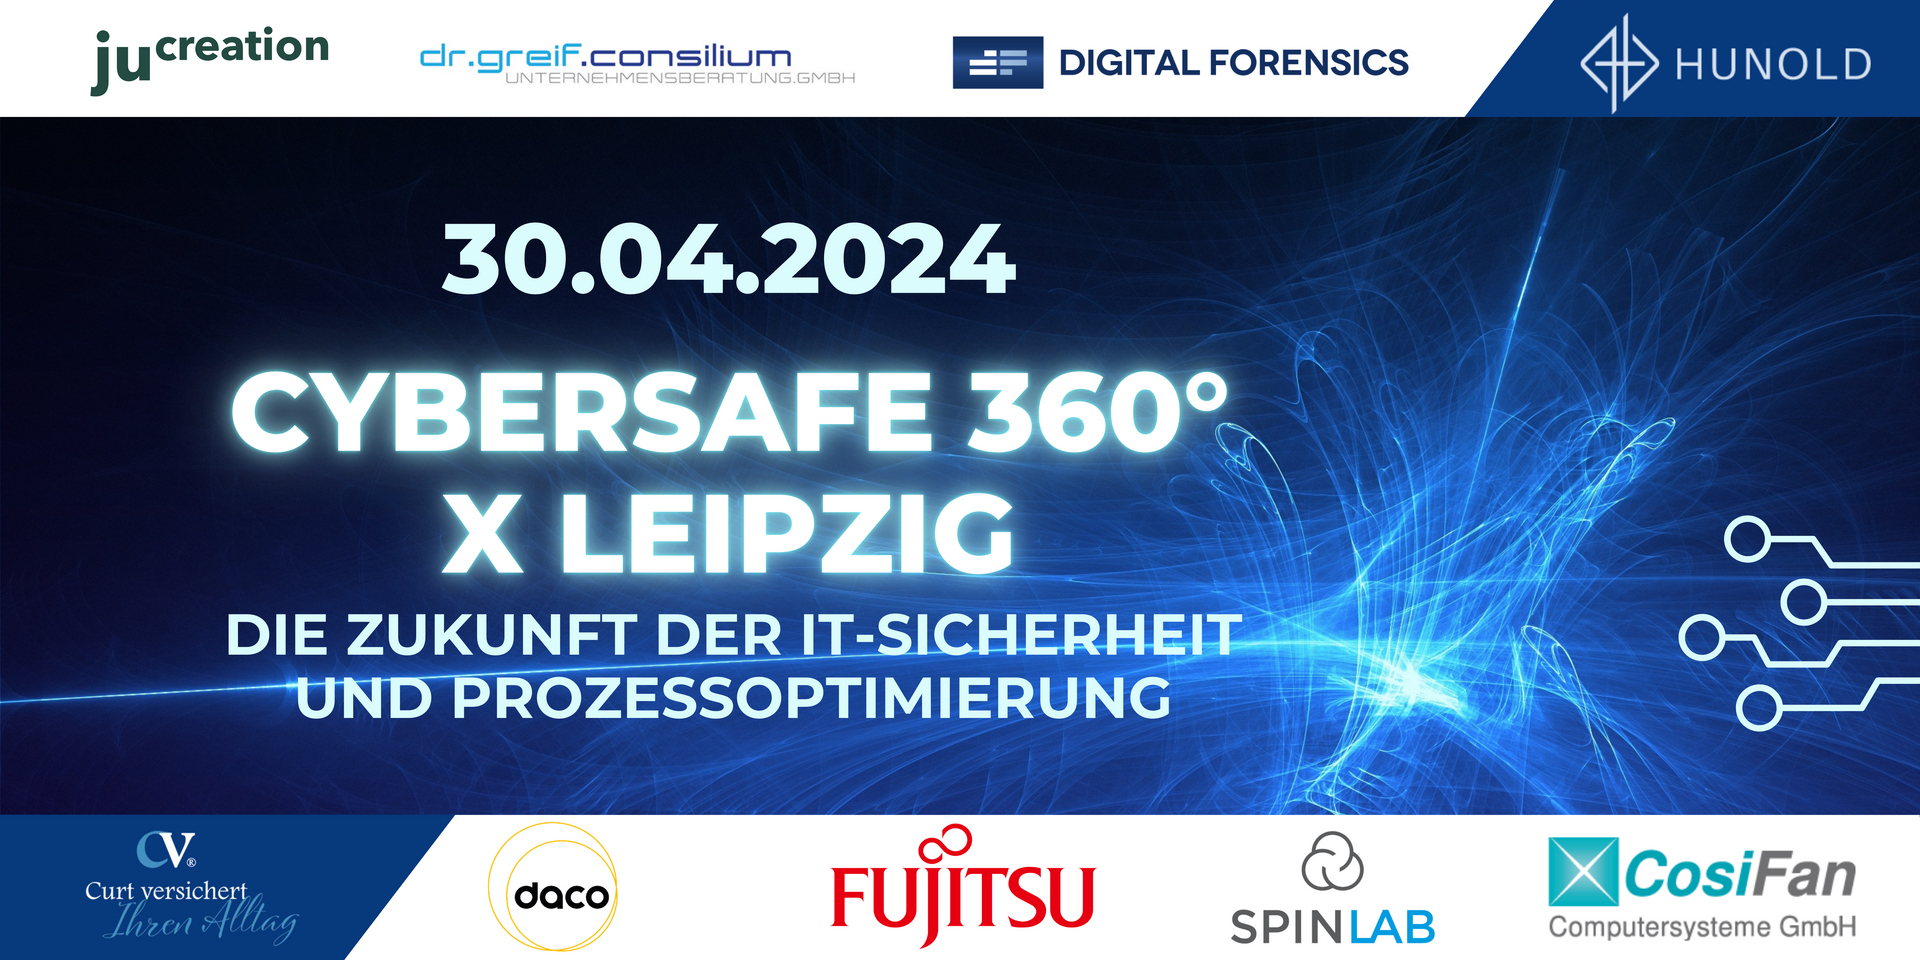 15.11.2023 Cybersafe360 x Leipzig